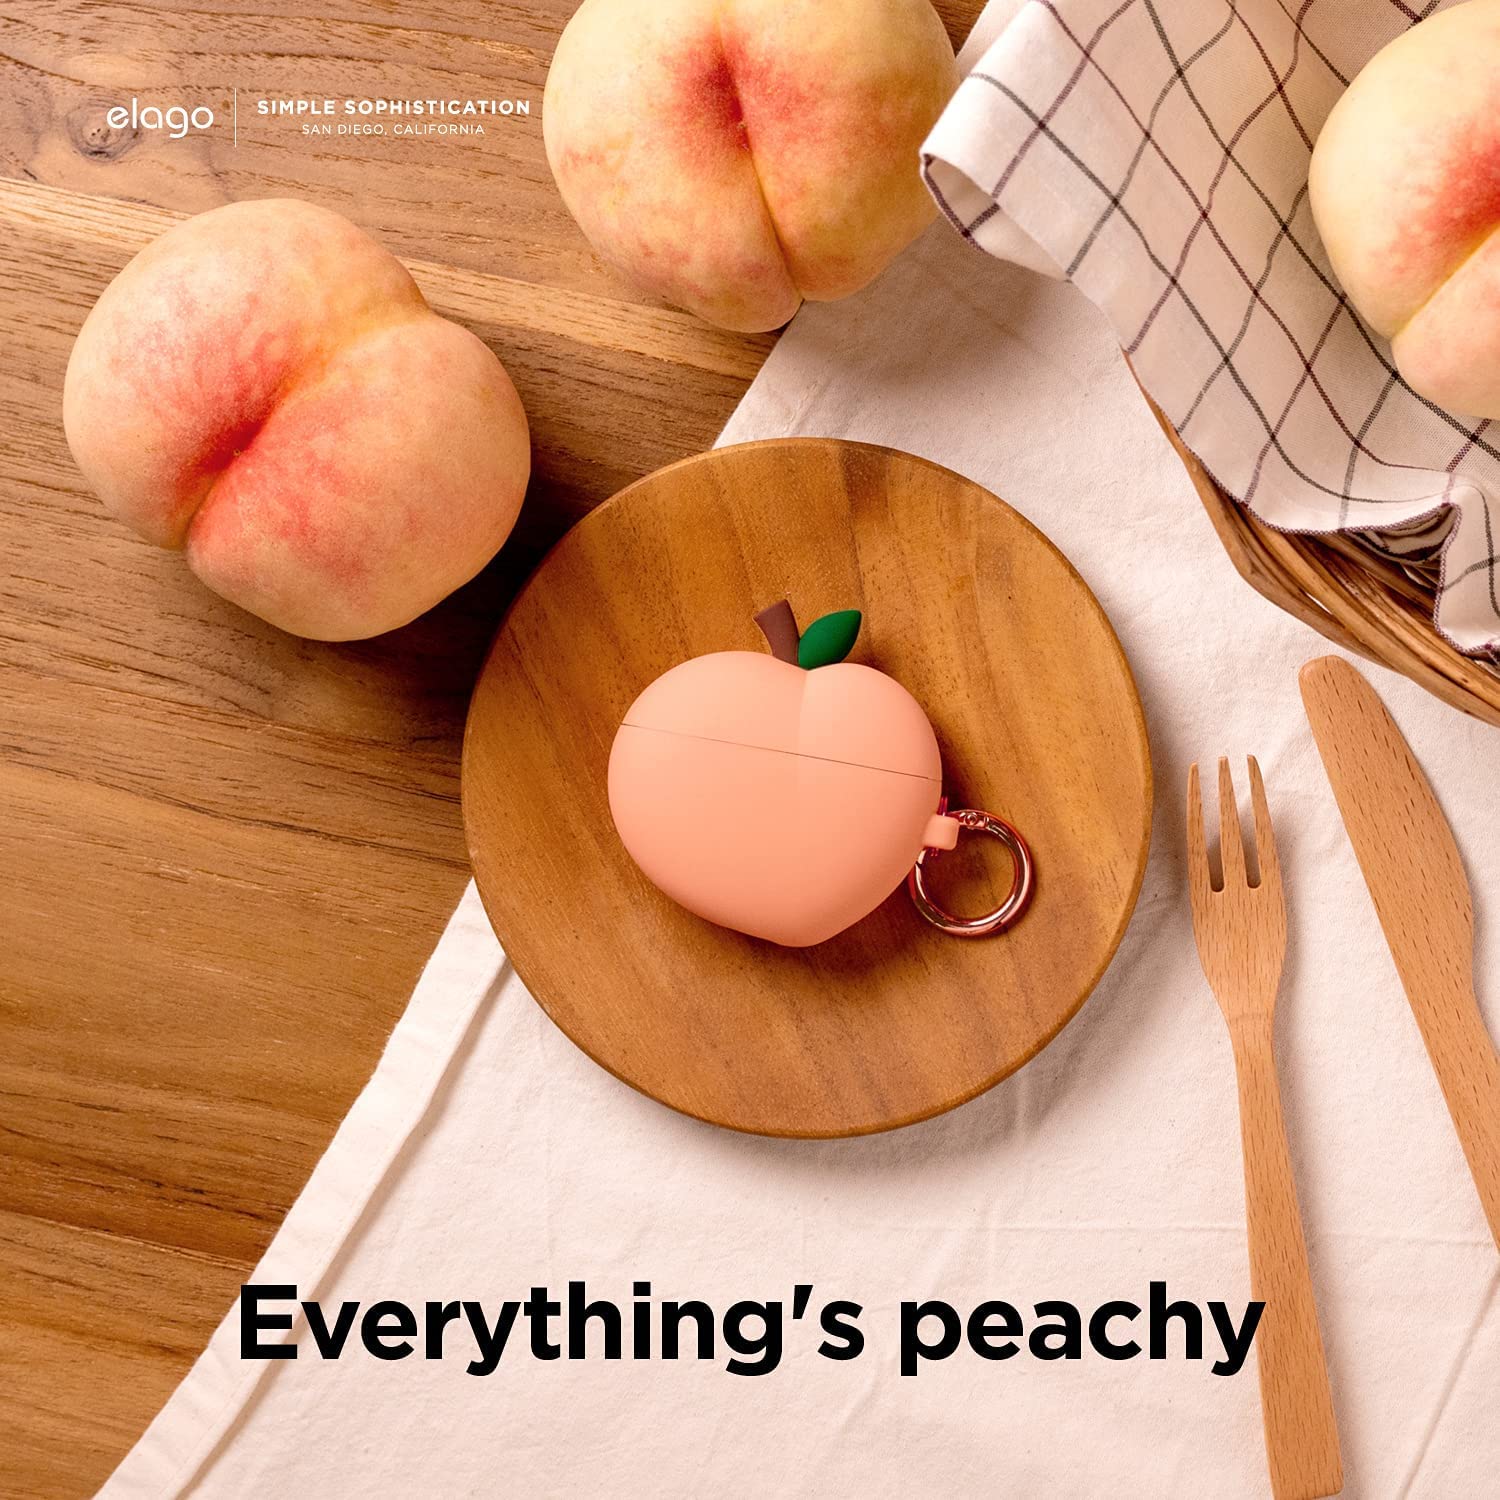 Elago AirPods 3 Peach Case - Peach		 		